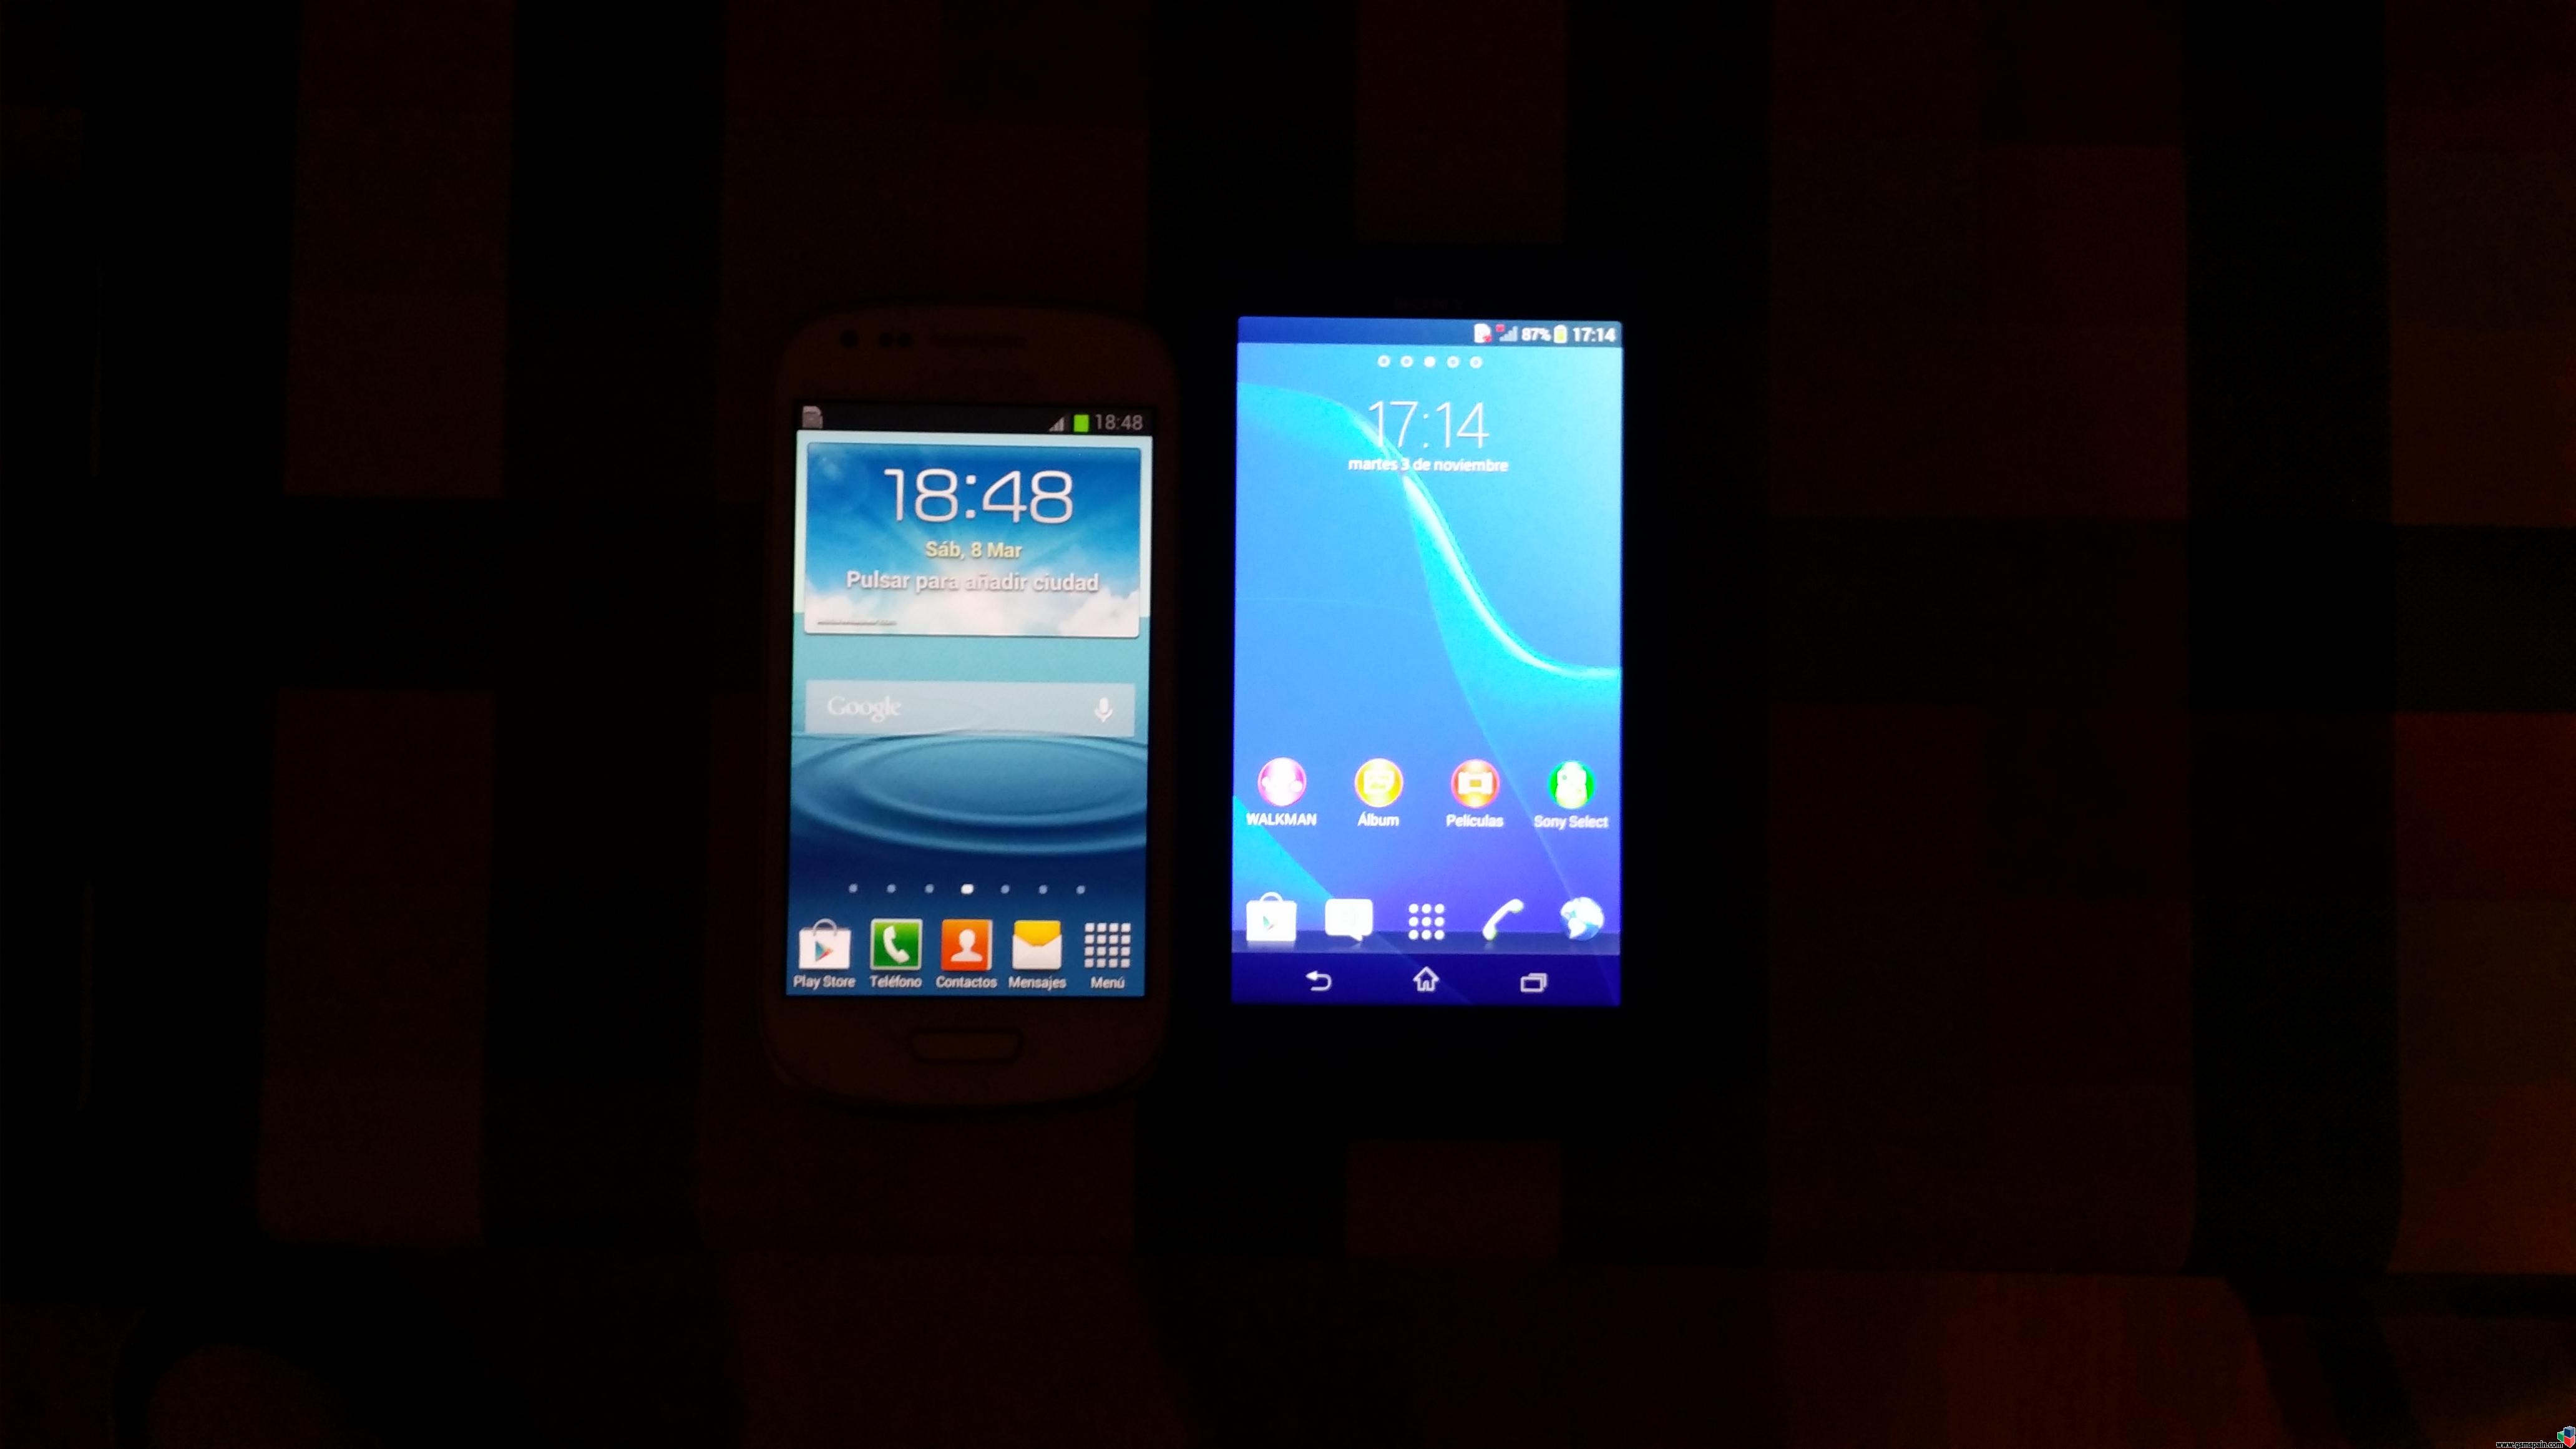 [VENDO] Sony Xperia T y Samsung Galaxy SIII Mini de Vodafone